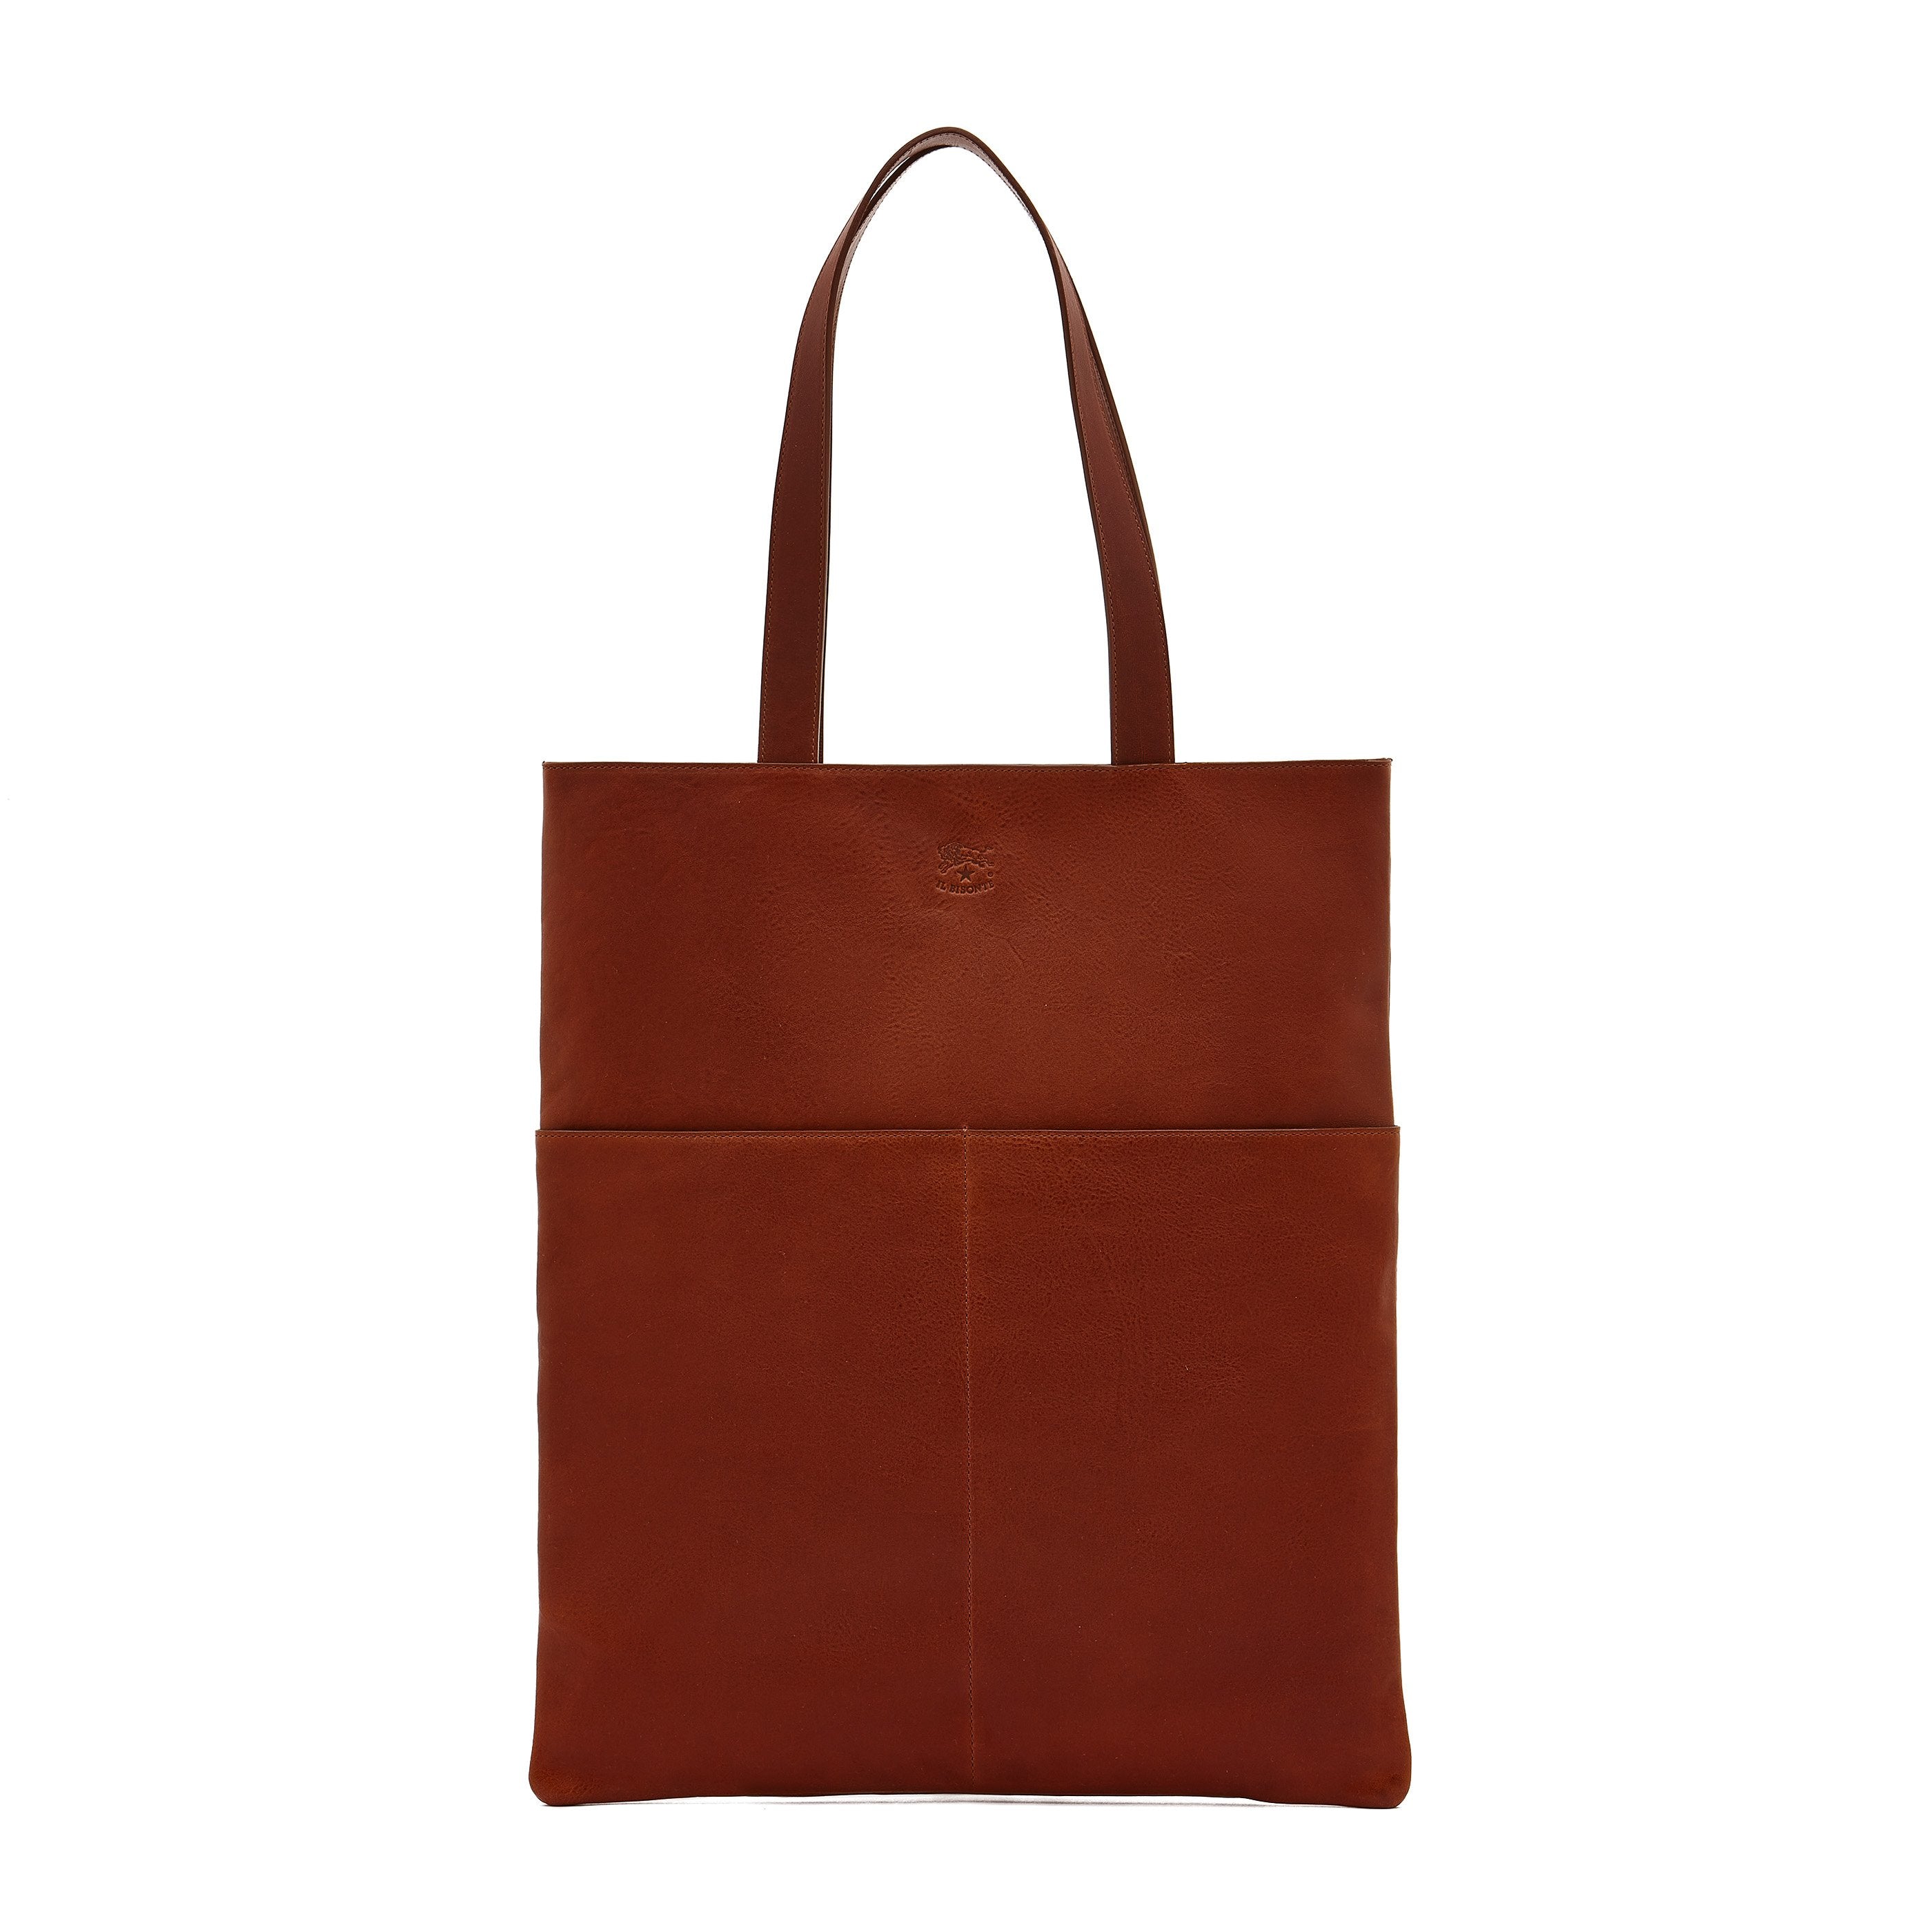 Oriuolo | Men's tote bag in vintage leather color sepia